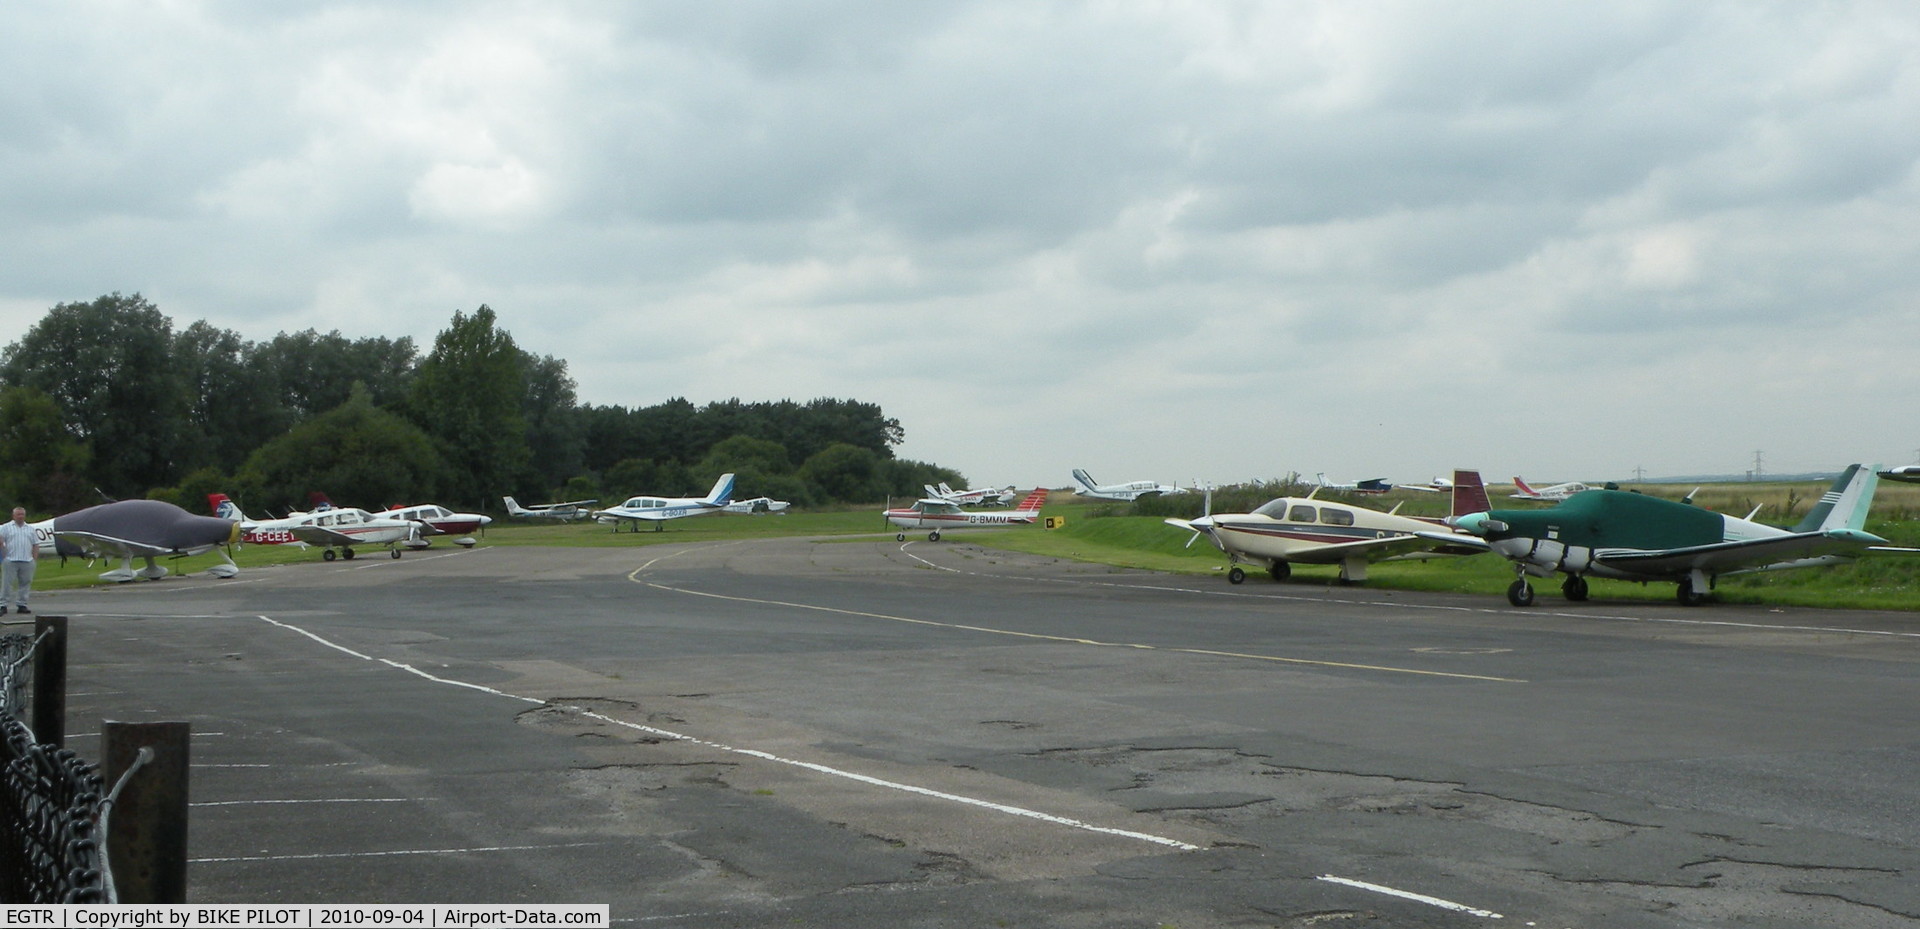 Elstree Airfield Airport, Watford, England United Kingdom (EGTR) - View towards western end of airfield